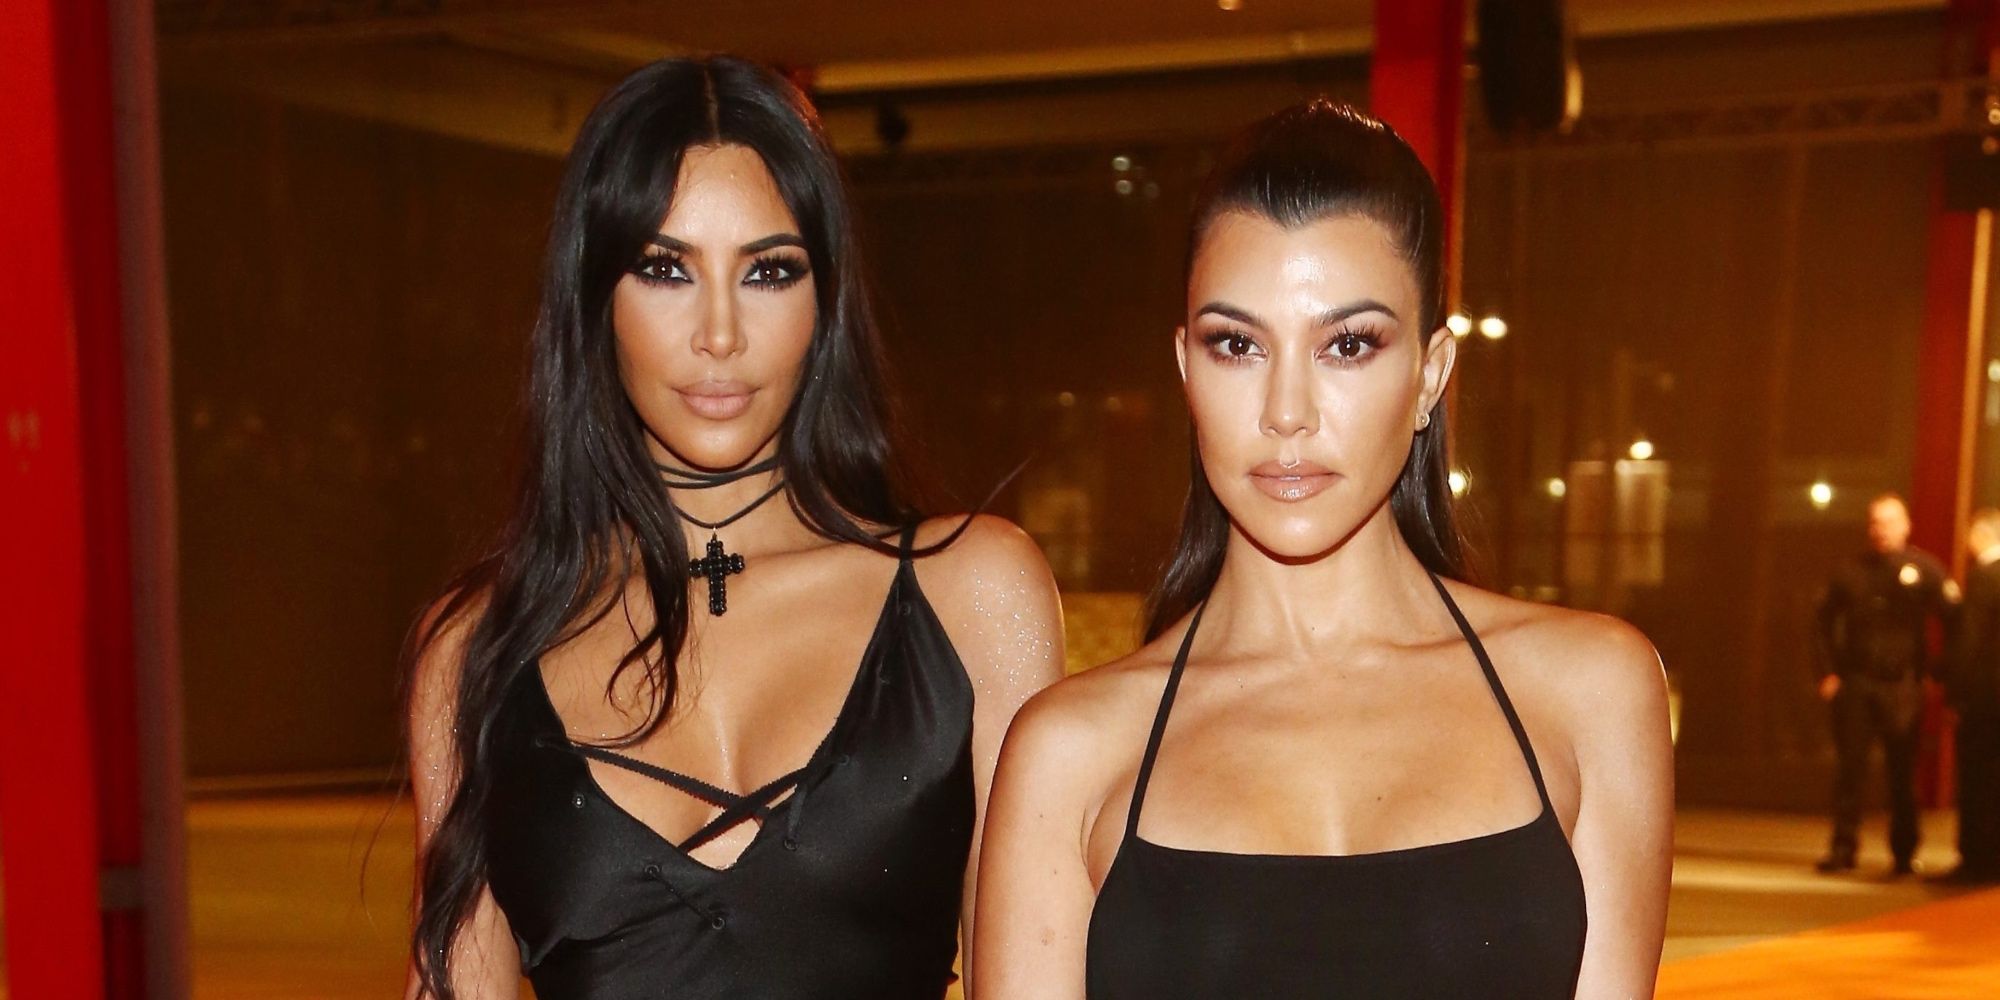 Kim Kardashian and Kourtney Kardashian KUWTK dressed up in black gowns